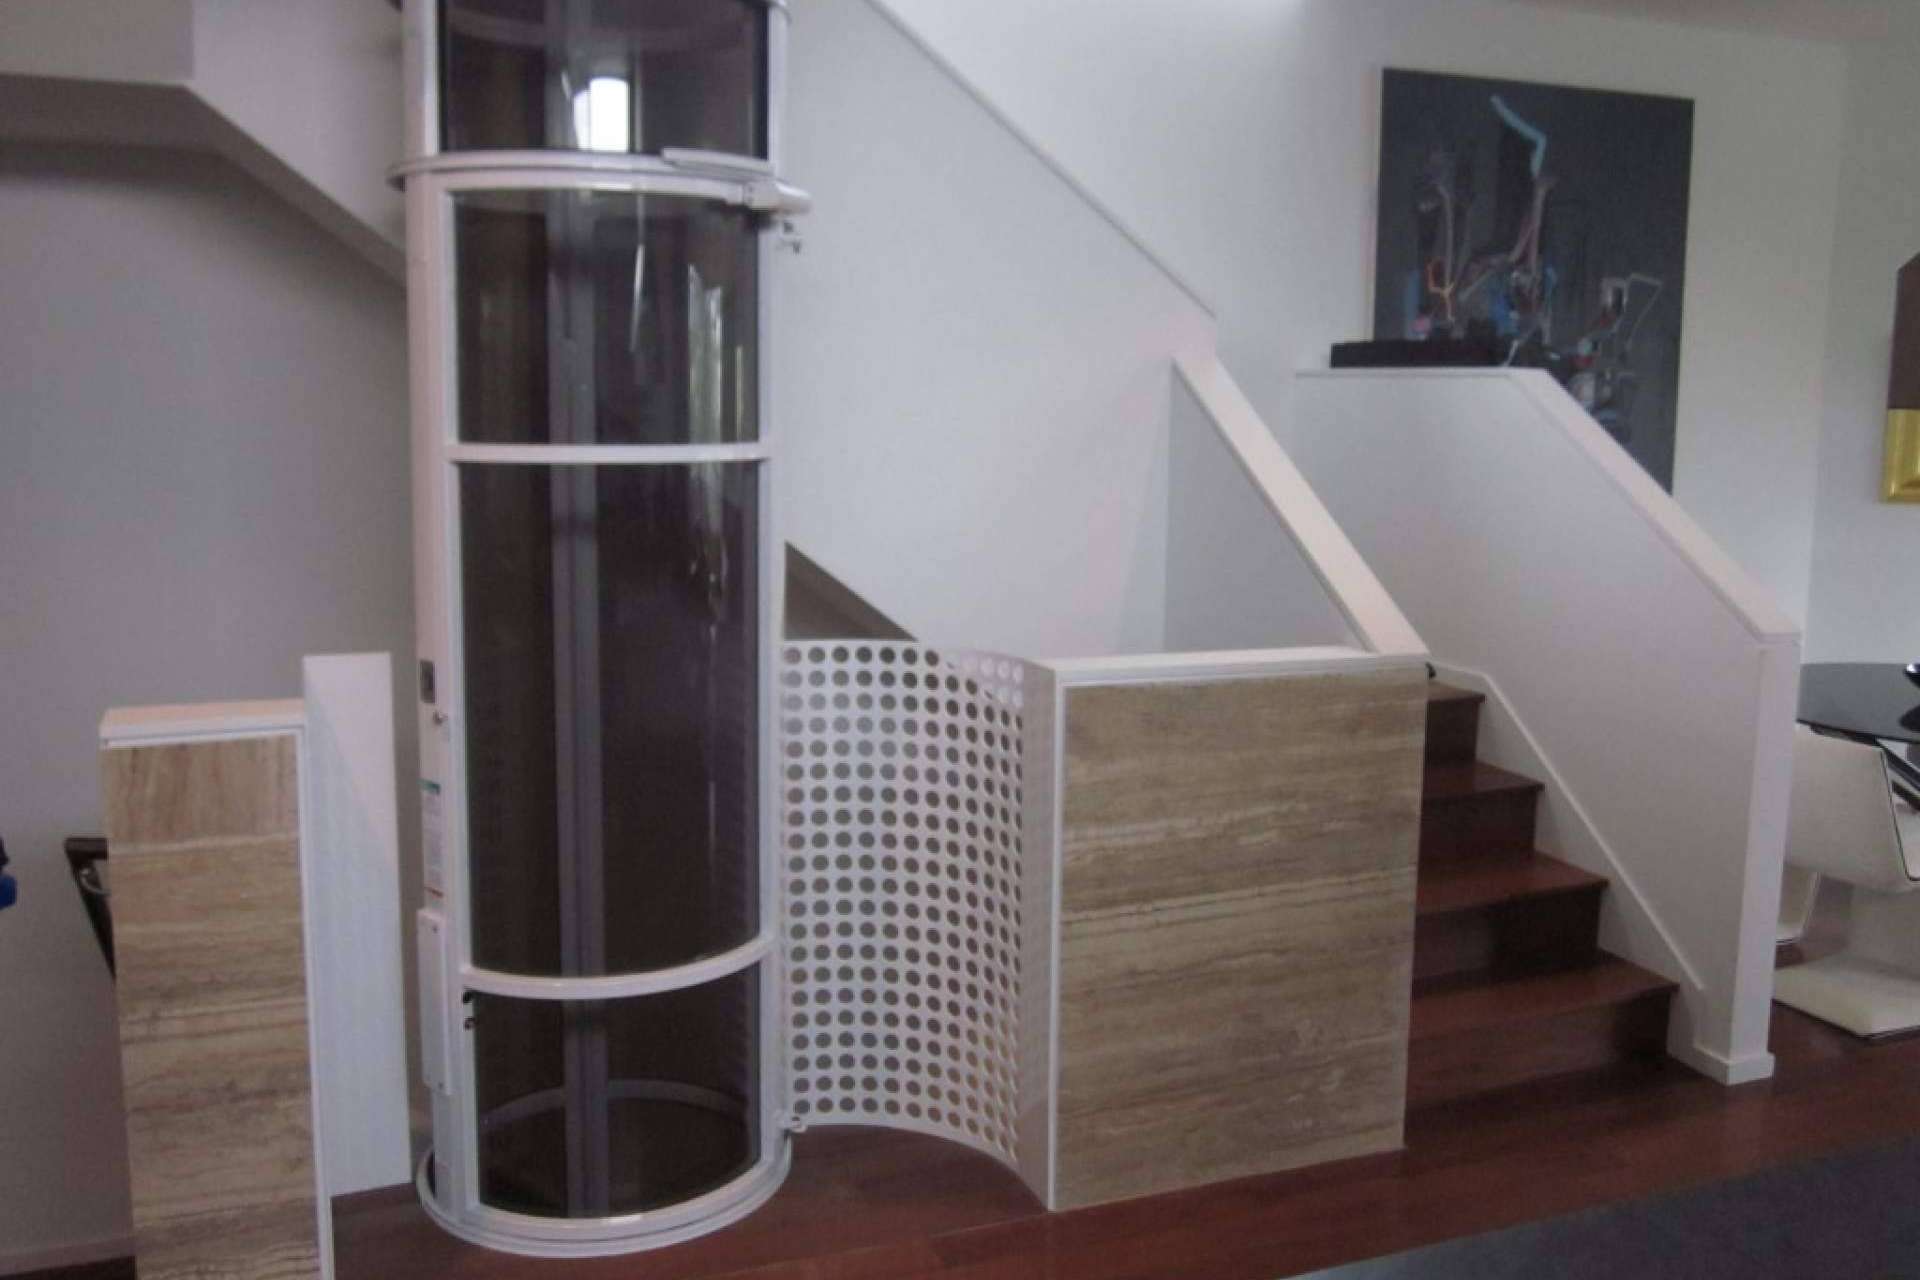 Estudio y ejecución de obras para la instalación de elevadores en Madrid de la mano de Disel Studio